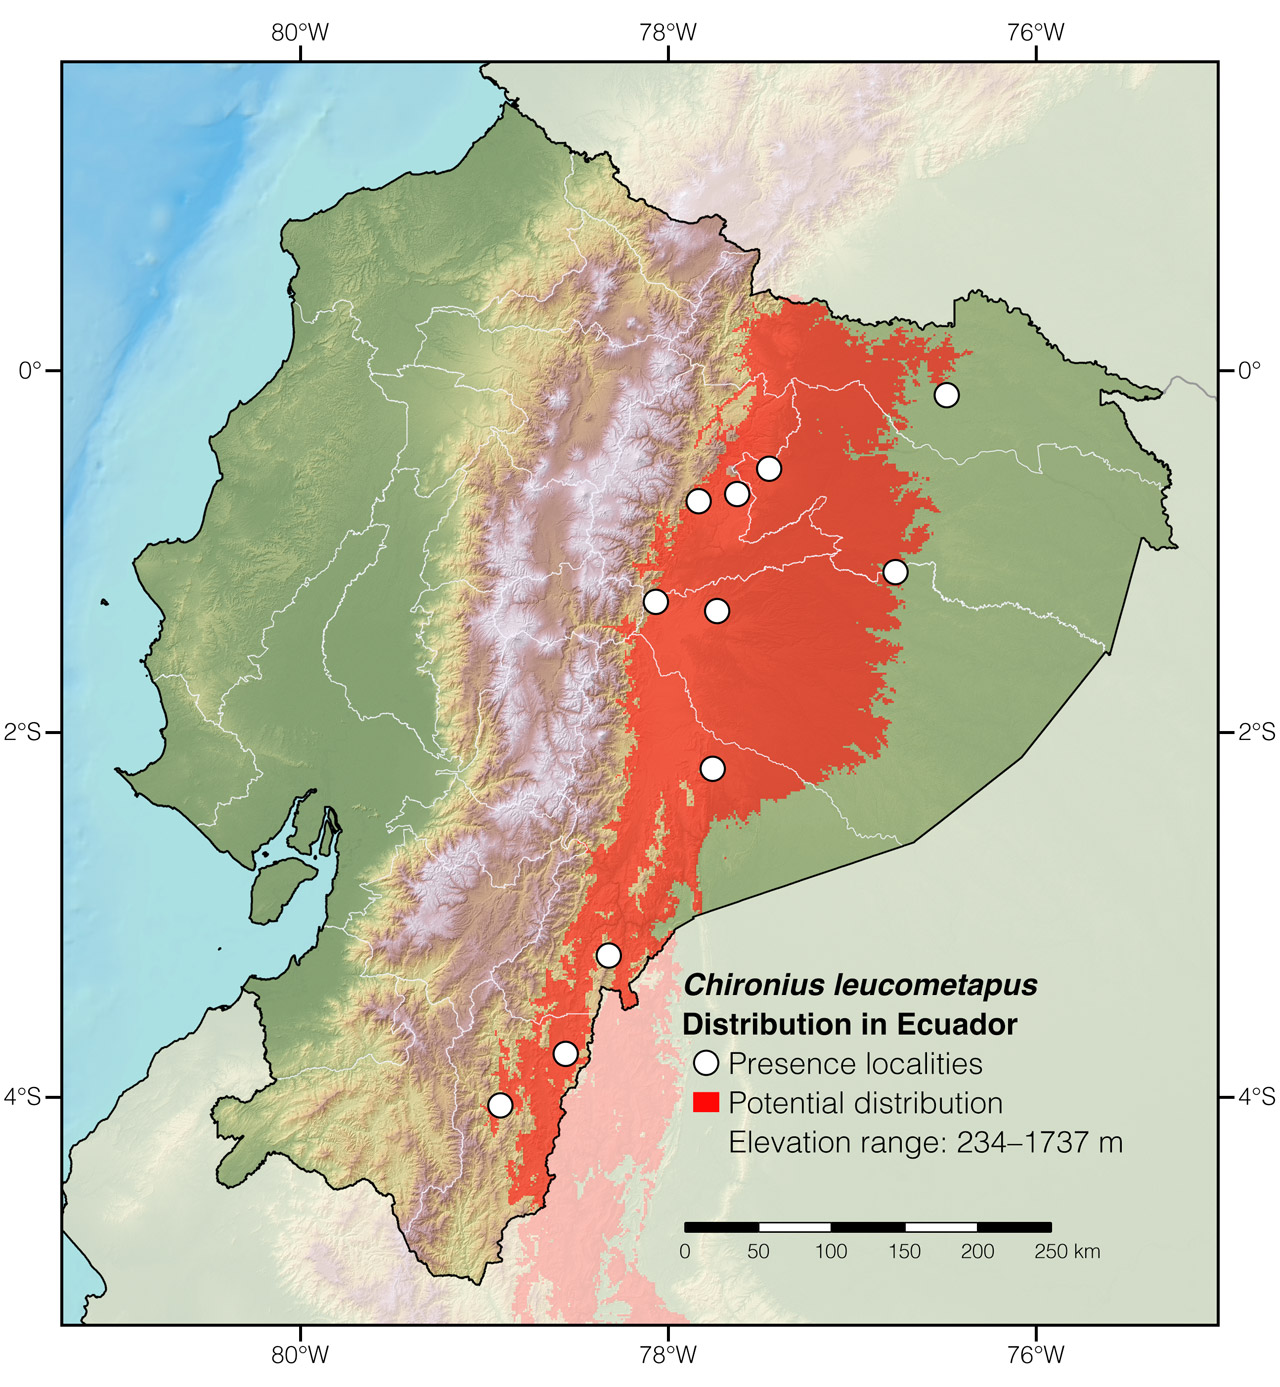 Distribution of Chironius leucometapus in Ecuador